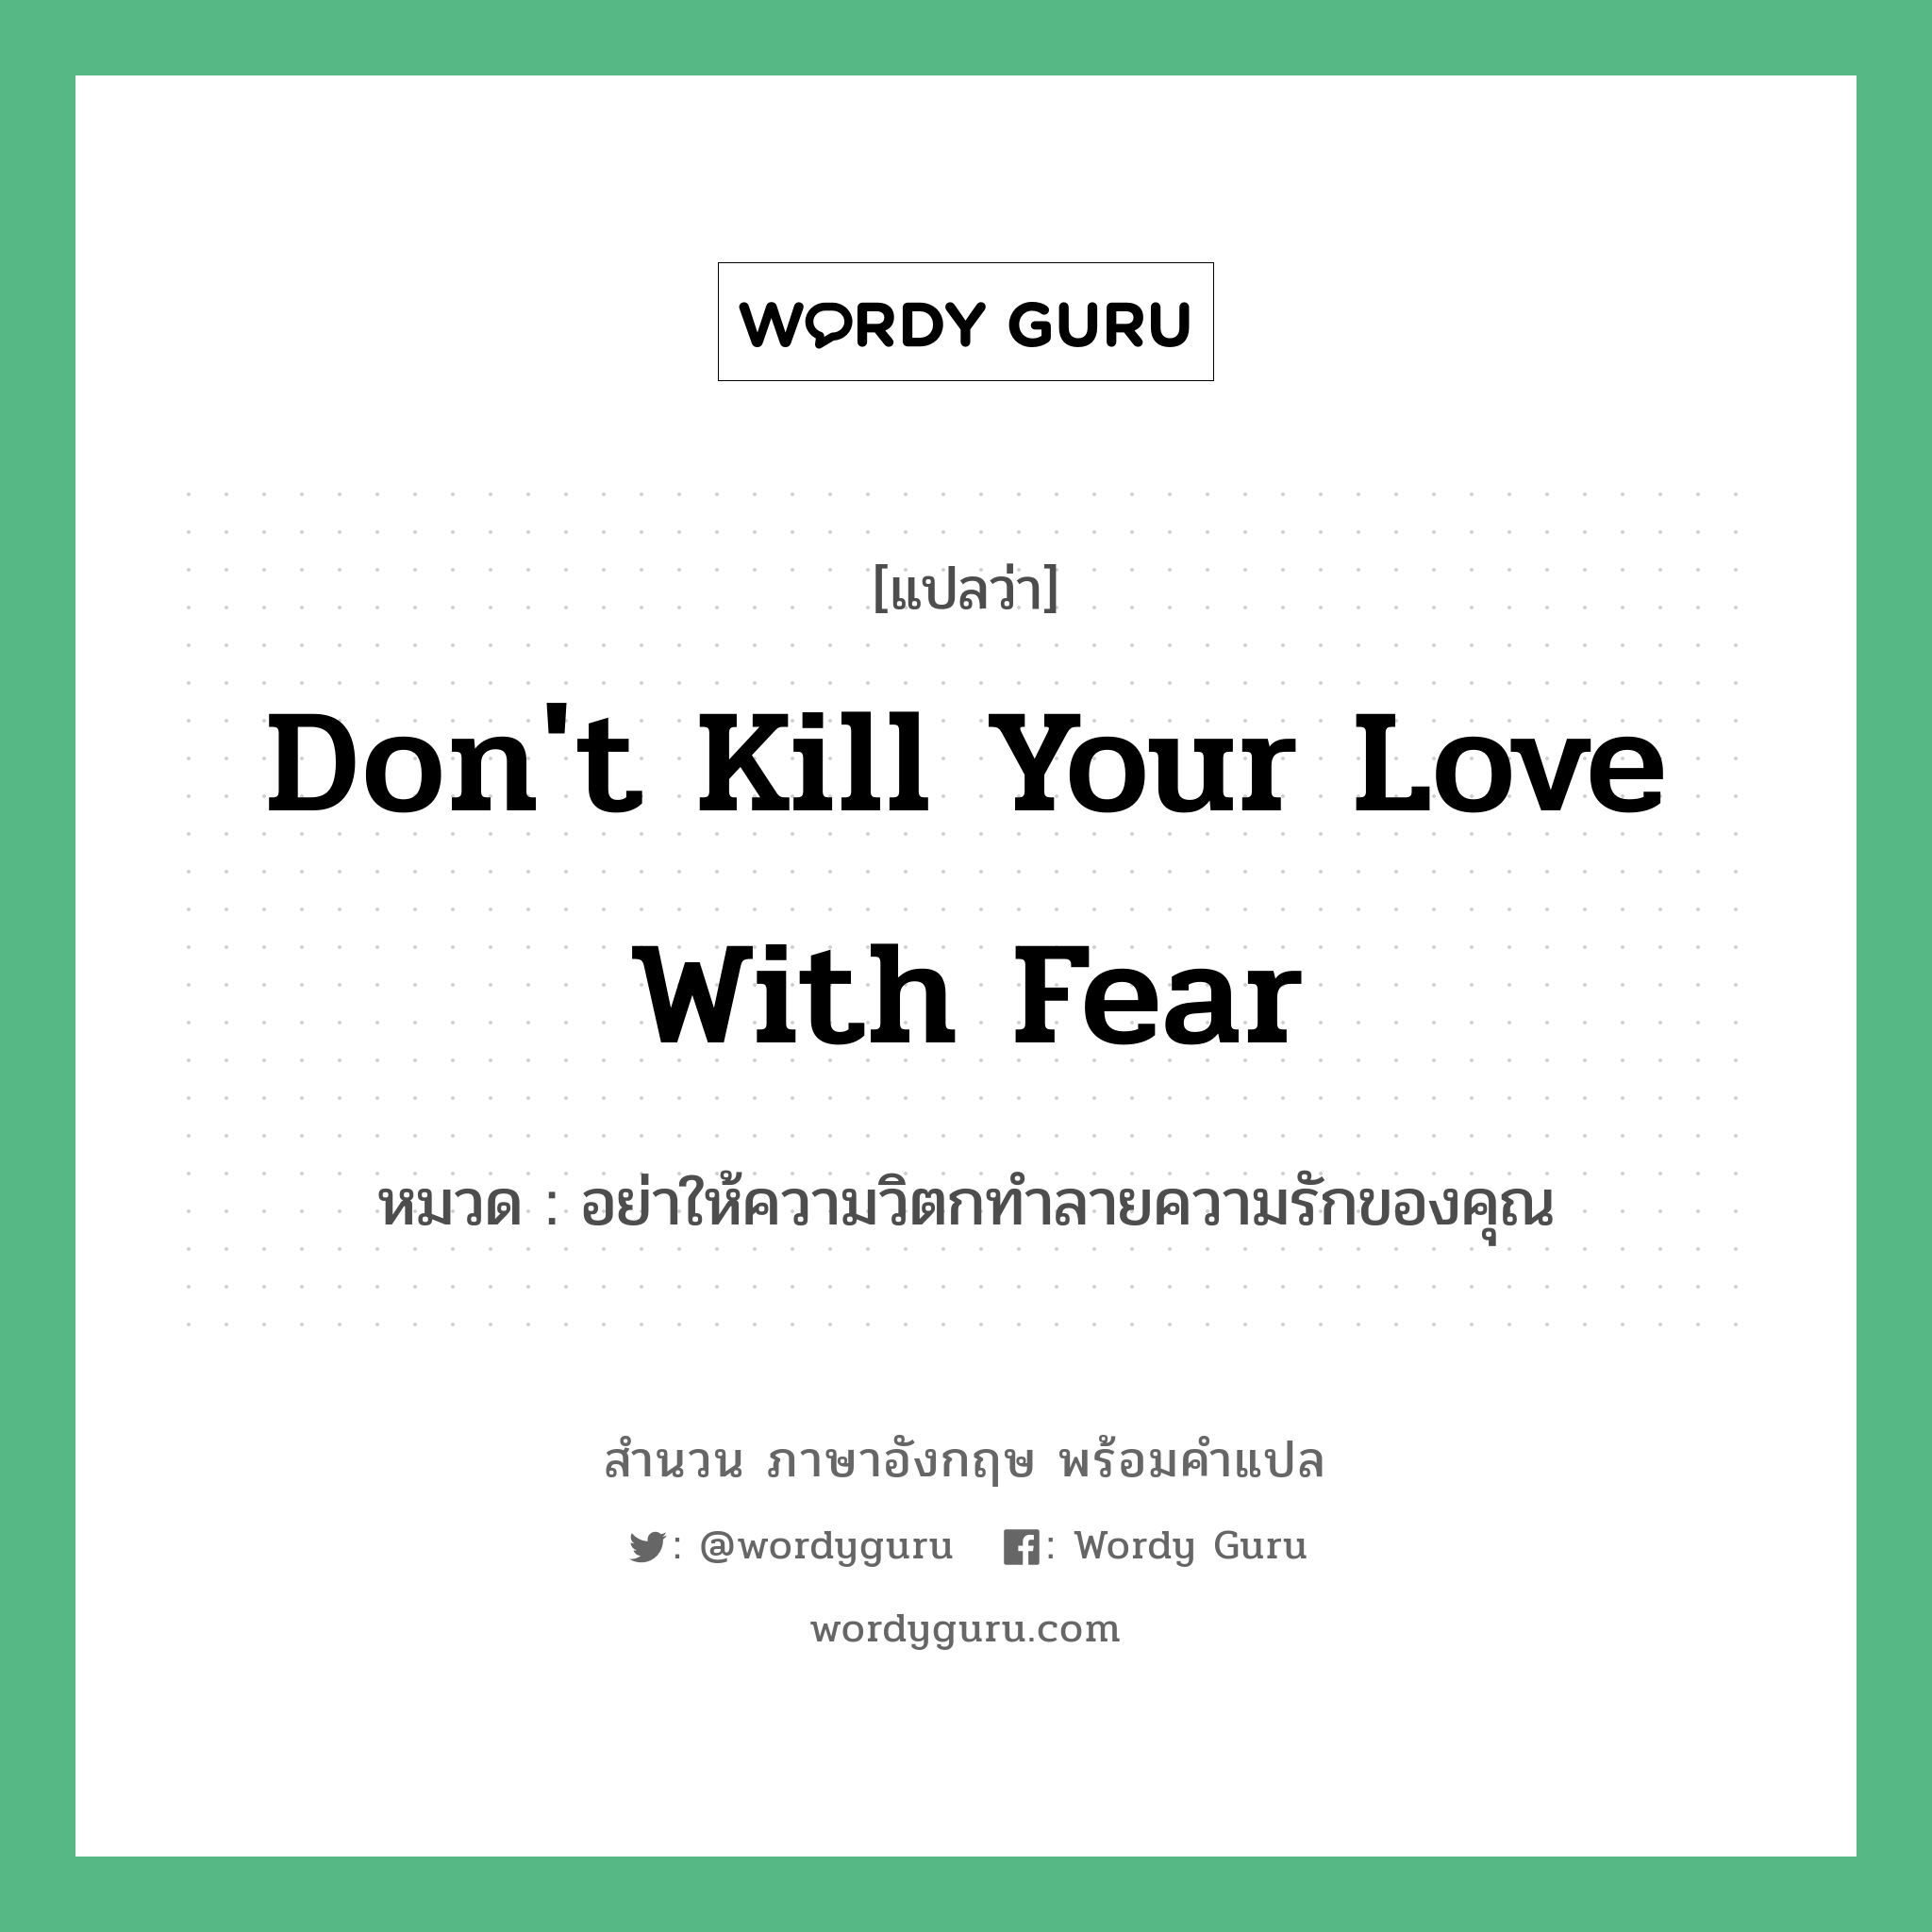 Don't kill your love with fear แปลว่า?, สำนวนภาษาอังกฤษ Don't kill your love with fear หมวด อย่าให้ความวิตกทำลายความรักของคุณ